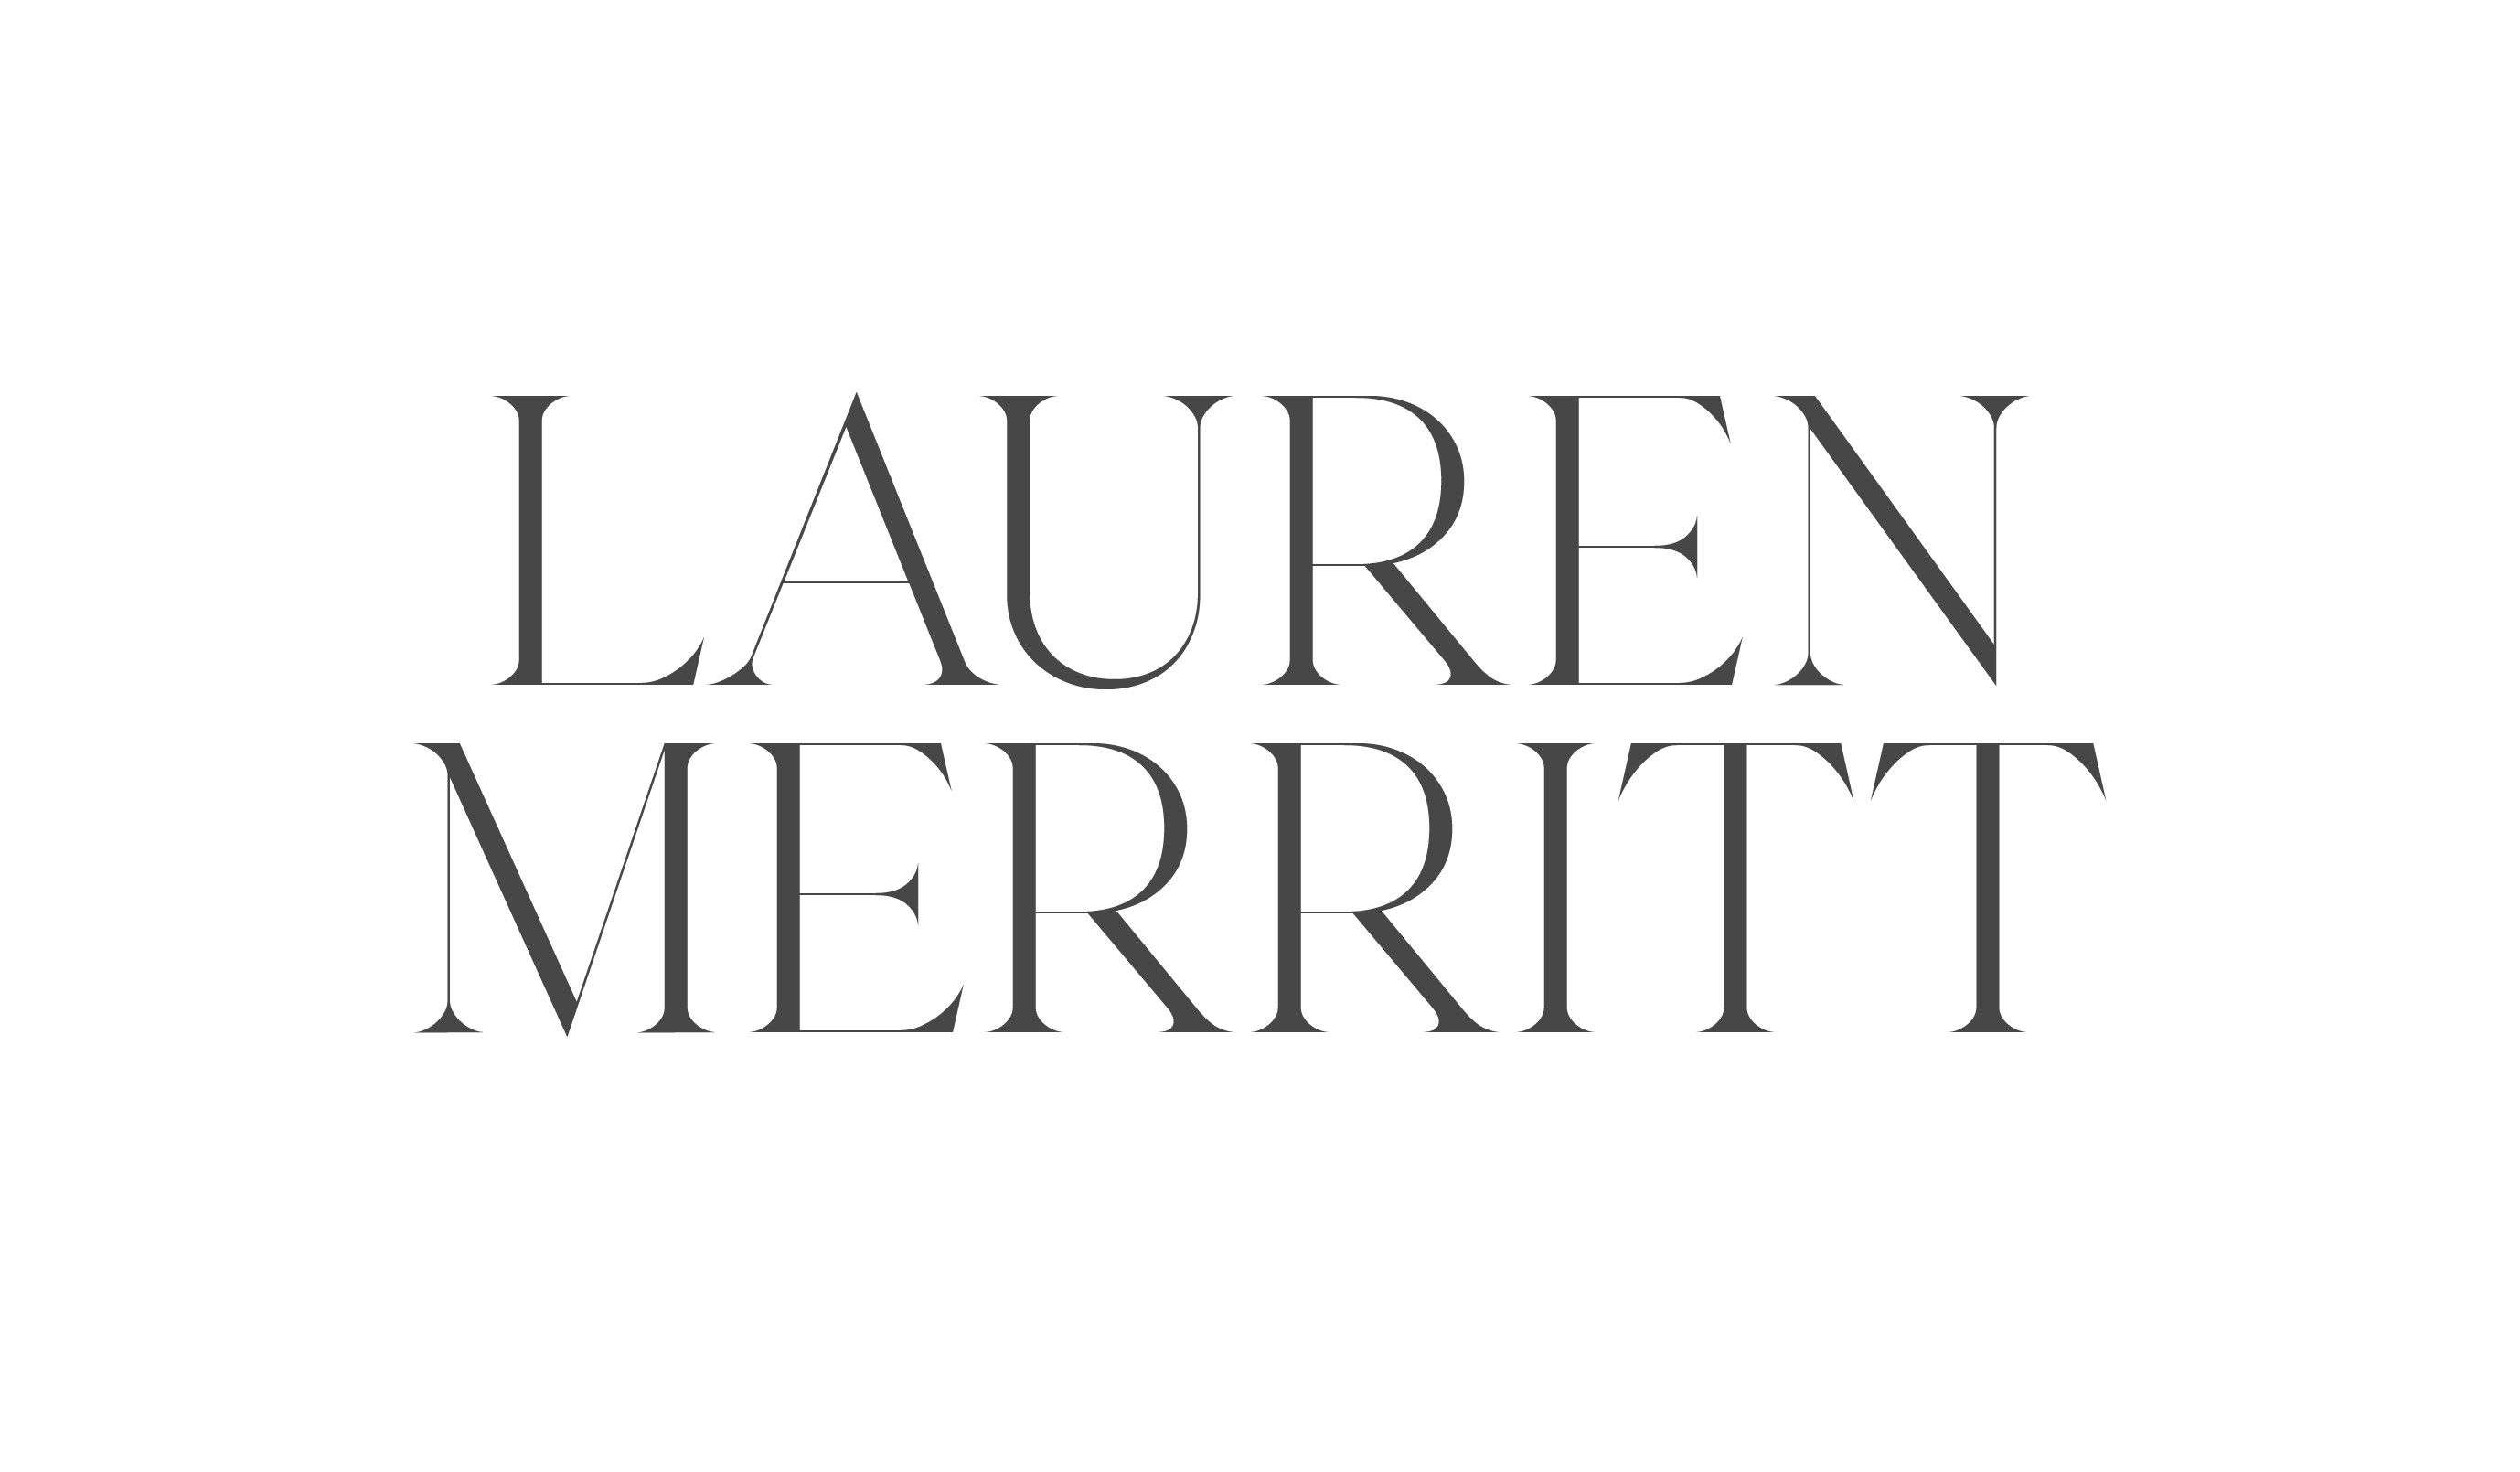 Lauren Merritt